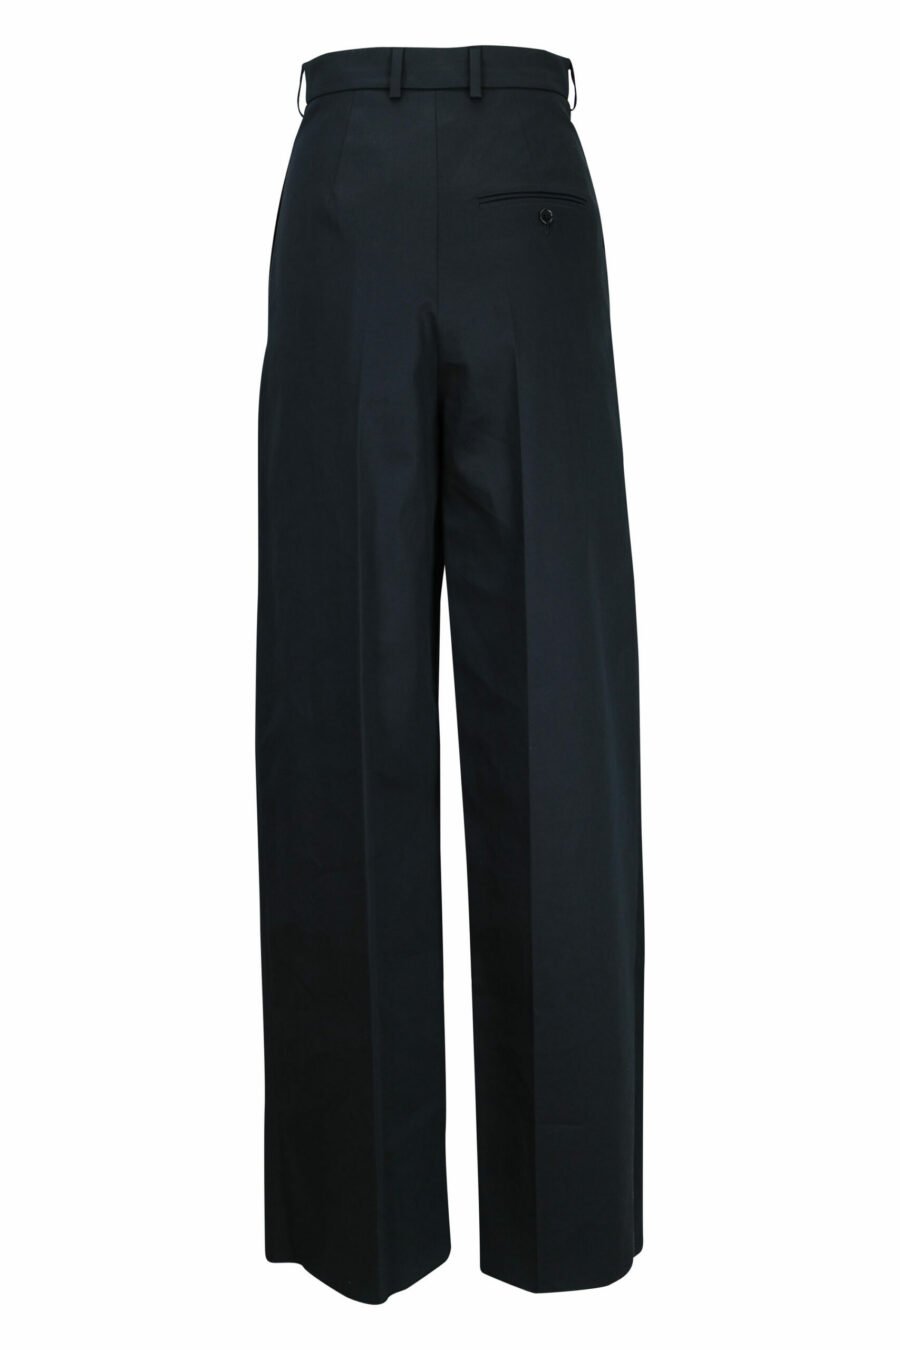 Pantalón negro de capas ancho - 21310841060032 3 scaled